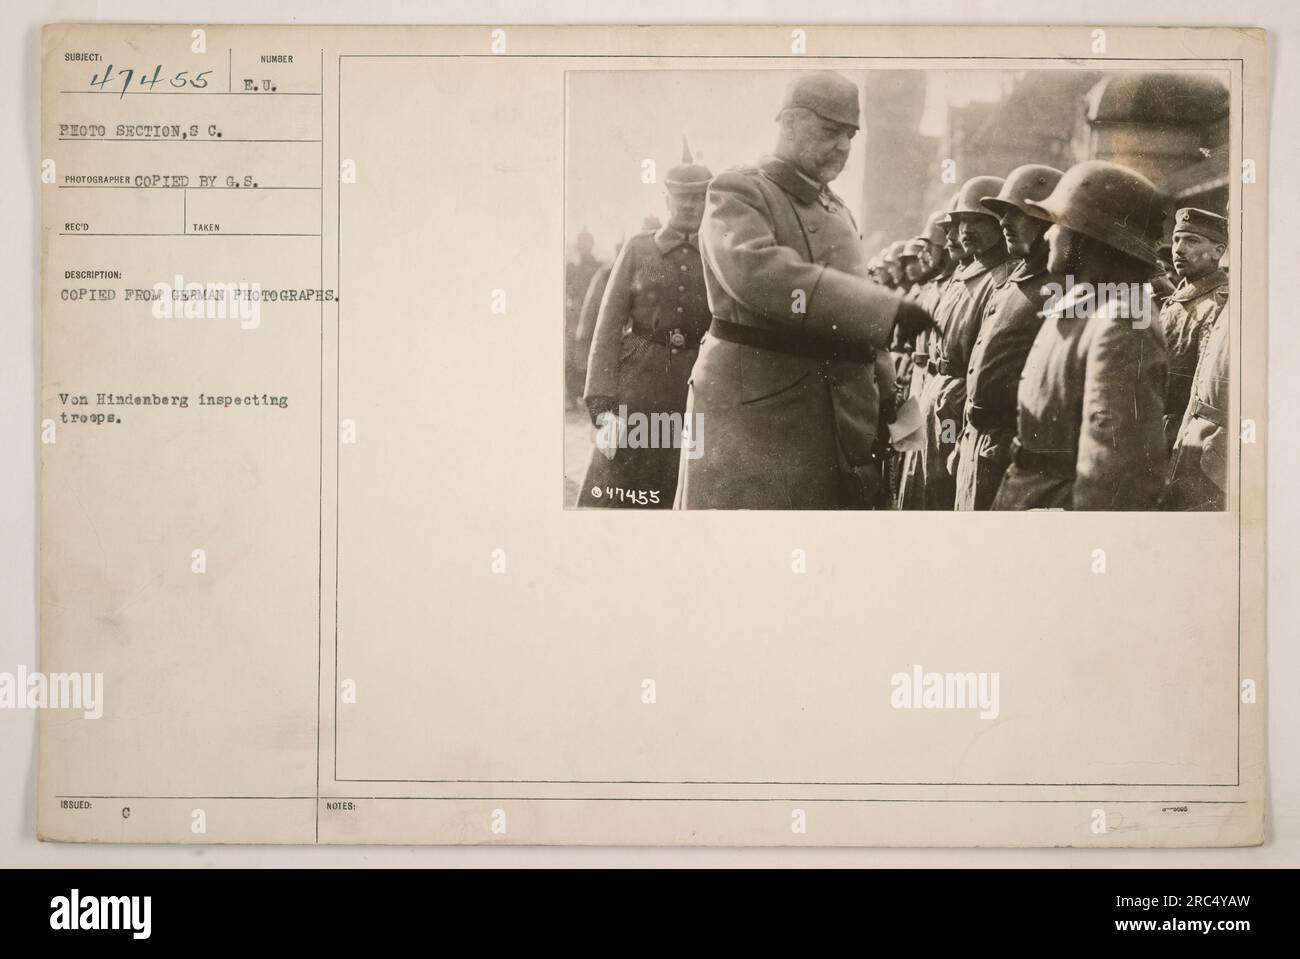 Der deutsche General Paul von Hindenburg inspiziert die Truppen im Ersten Weltkrieg. Dieses Foto wurde von G.S. kopiert Reco und ausgestellt gemäß der EU Das Foto ist Teil des Fotobereichs Subiect 47455. In der Beschreibung steht, dass es von deutschen Fotos kopiert wurde. Stockfoto